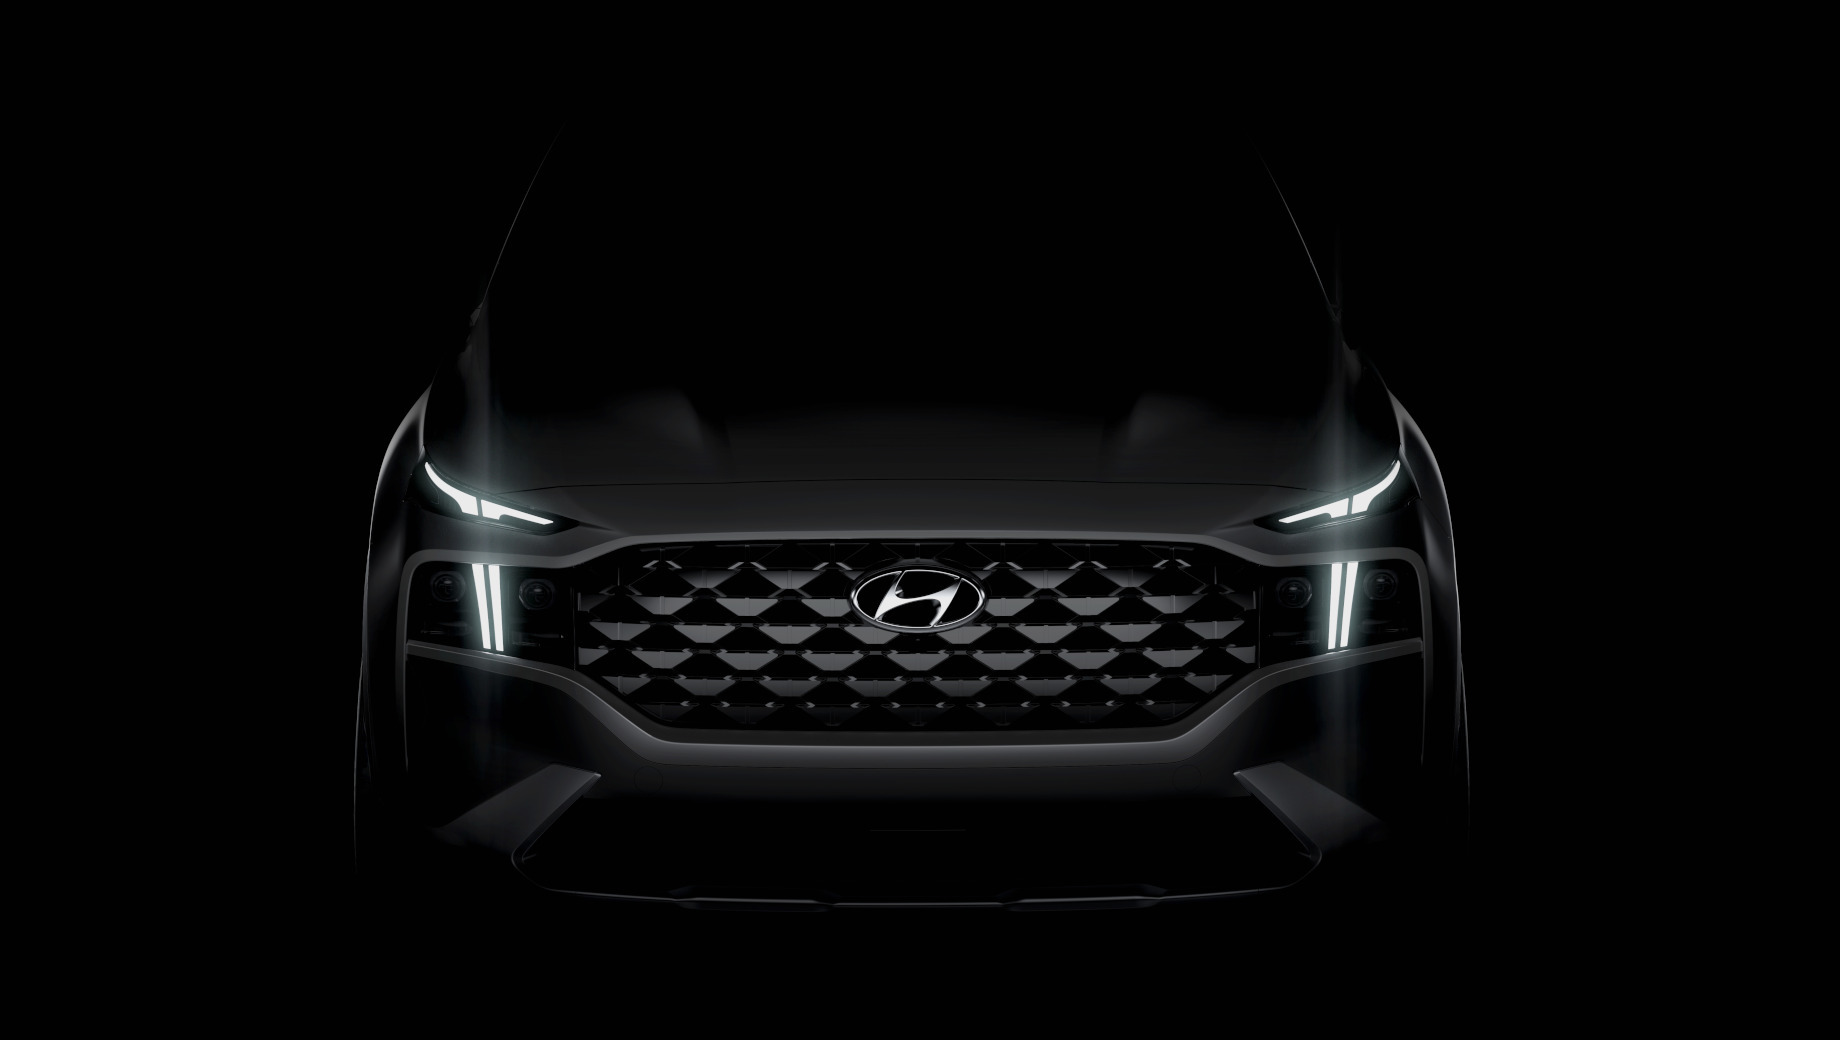 Hyundai santa fe. Hyundai хочет, чтобы мы увидели существенно расширенную решётку со «стереоскопическим геометрическим рисунком» и Т-образные ходовые огни, которые «намекают на технологические усовершенствования» и «отражают новую интегрированную архитектуру».